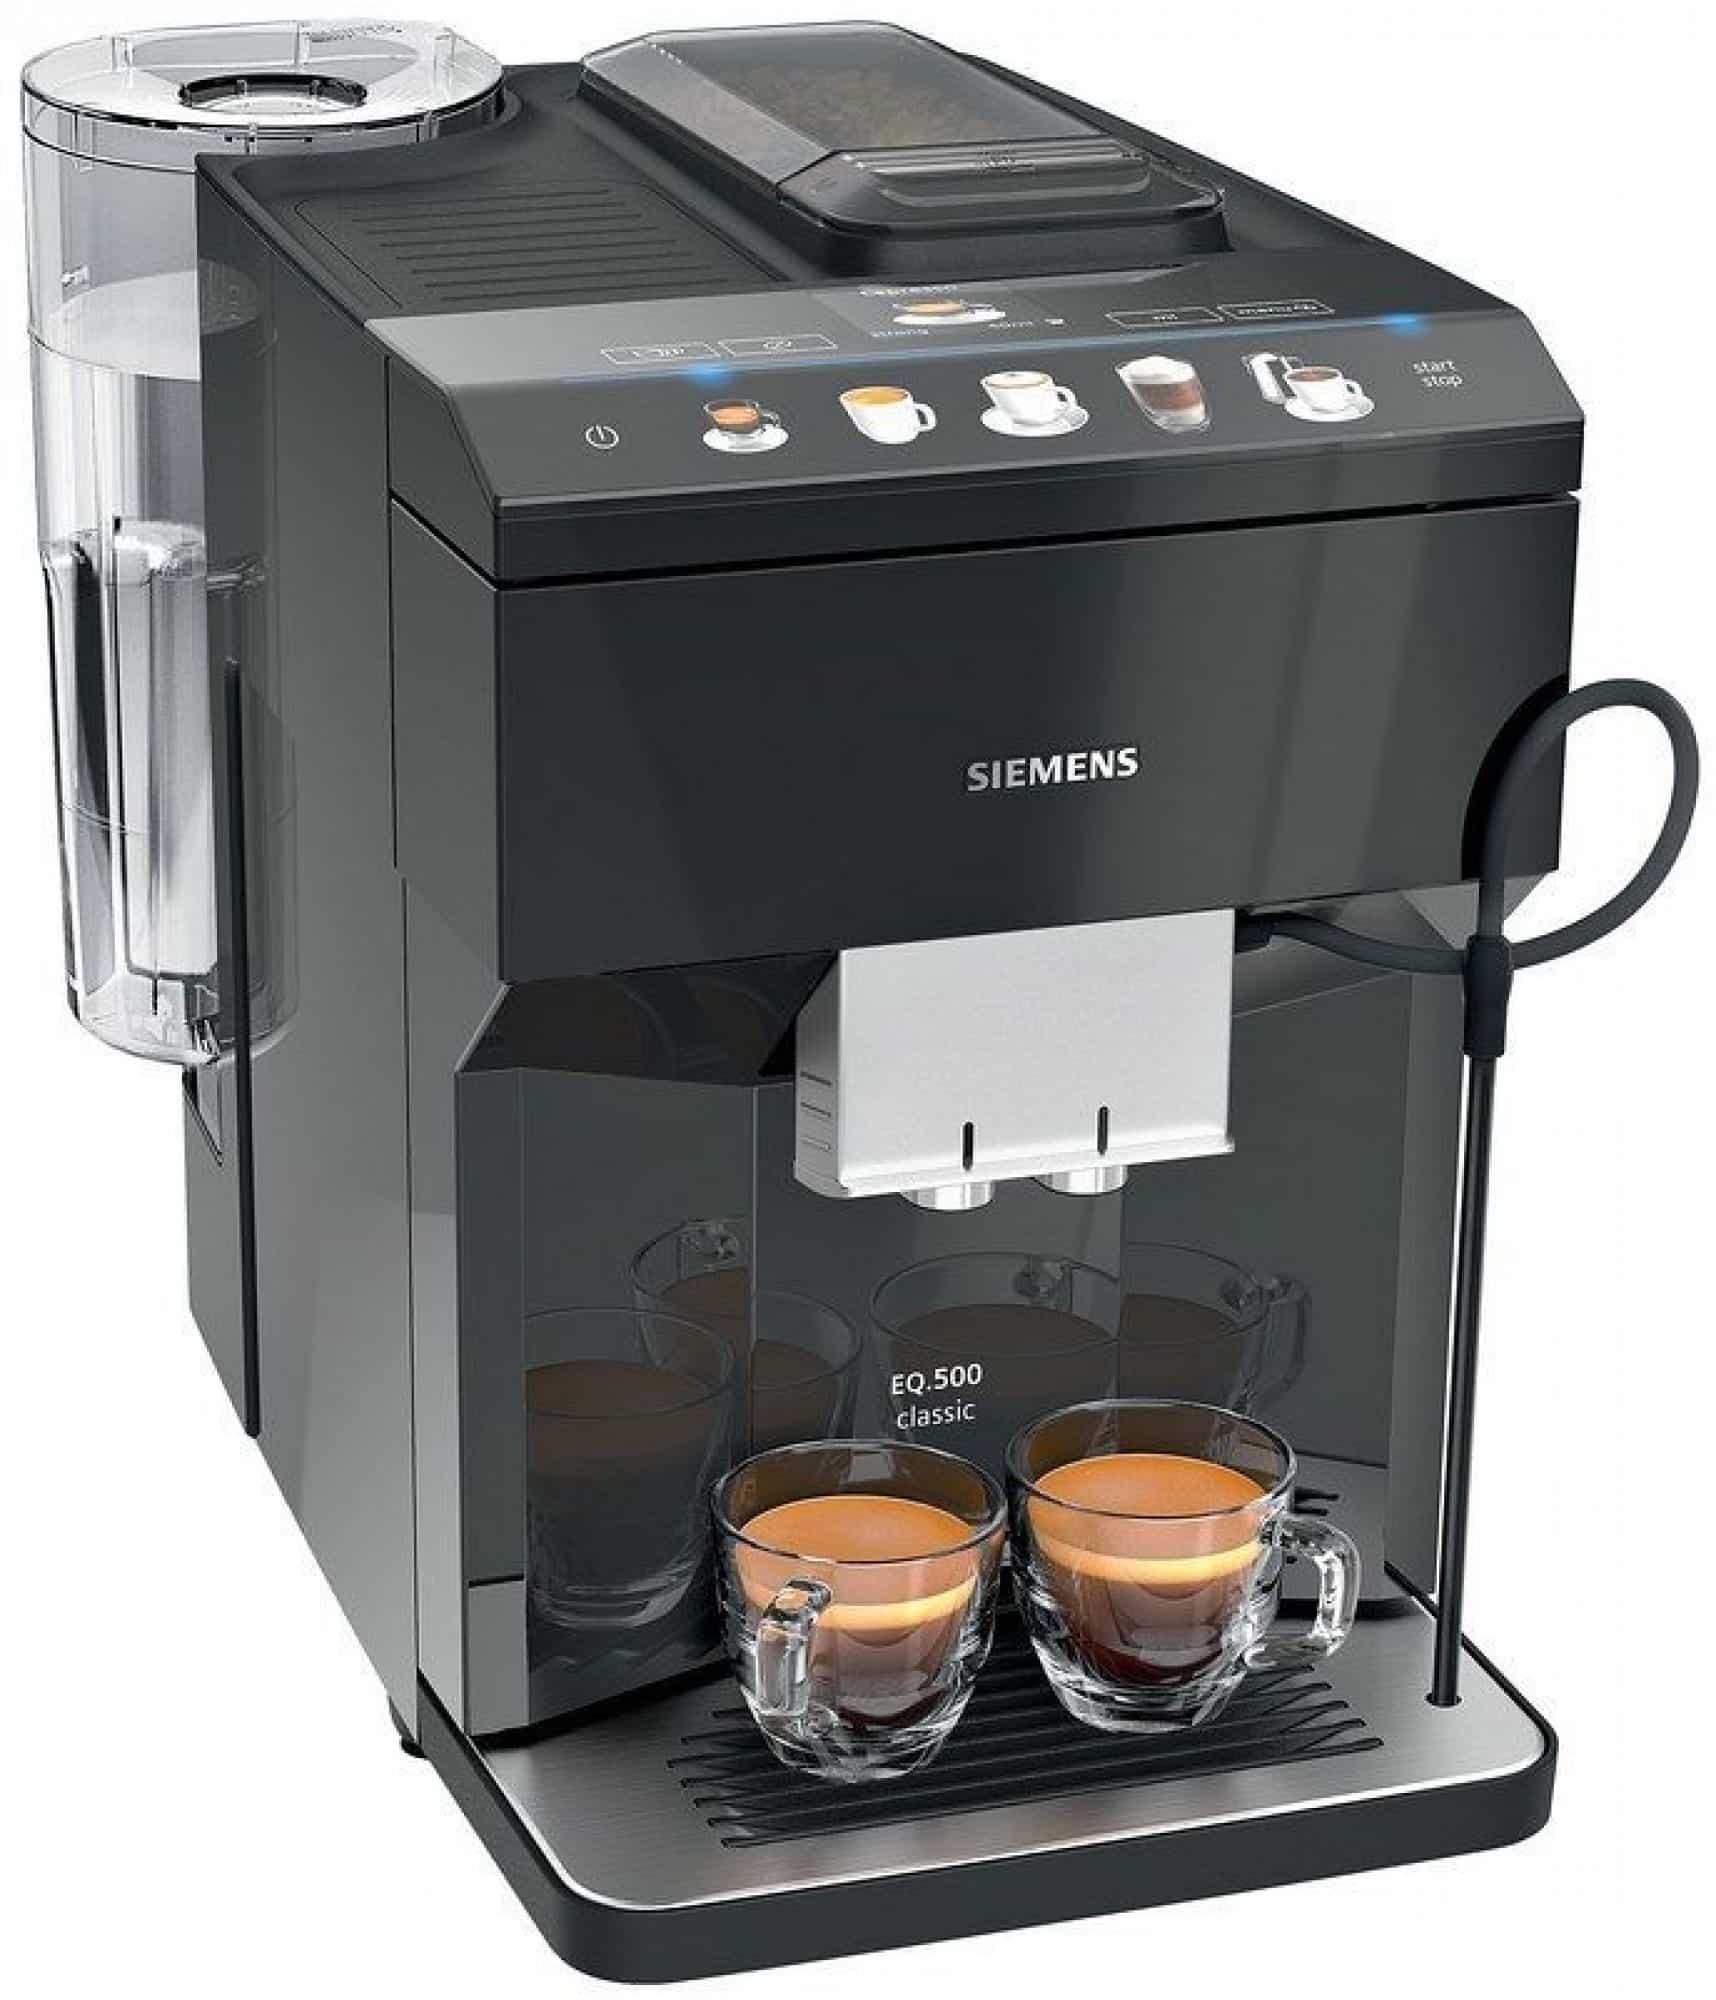 Automatický kávovar s keramickým mlýnkem značky Siemens.